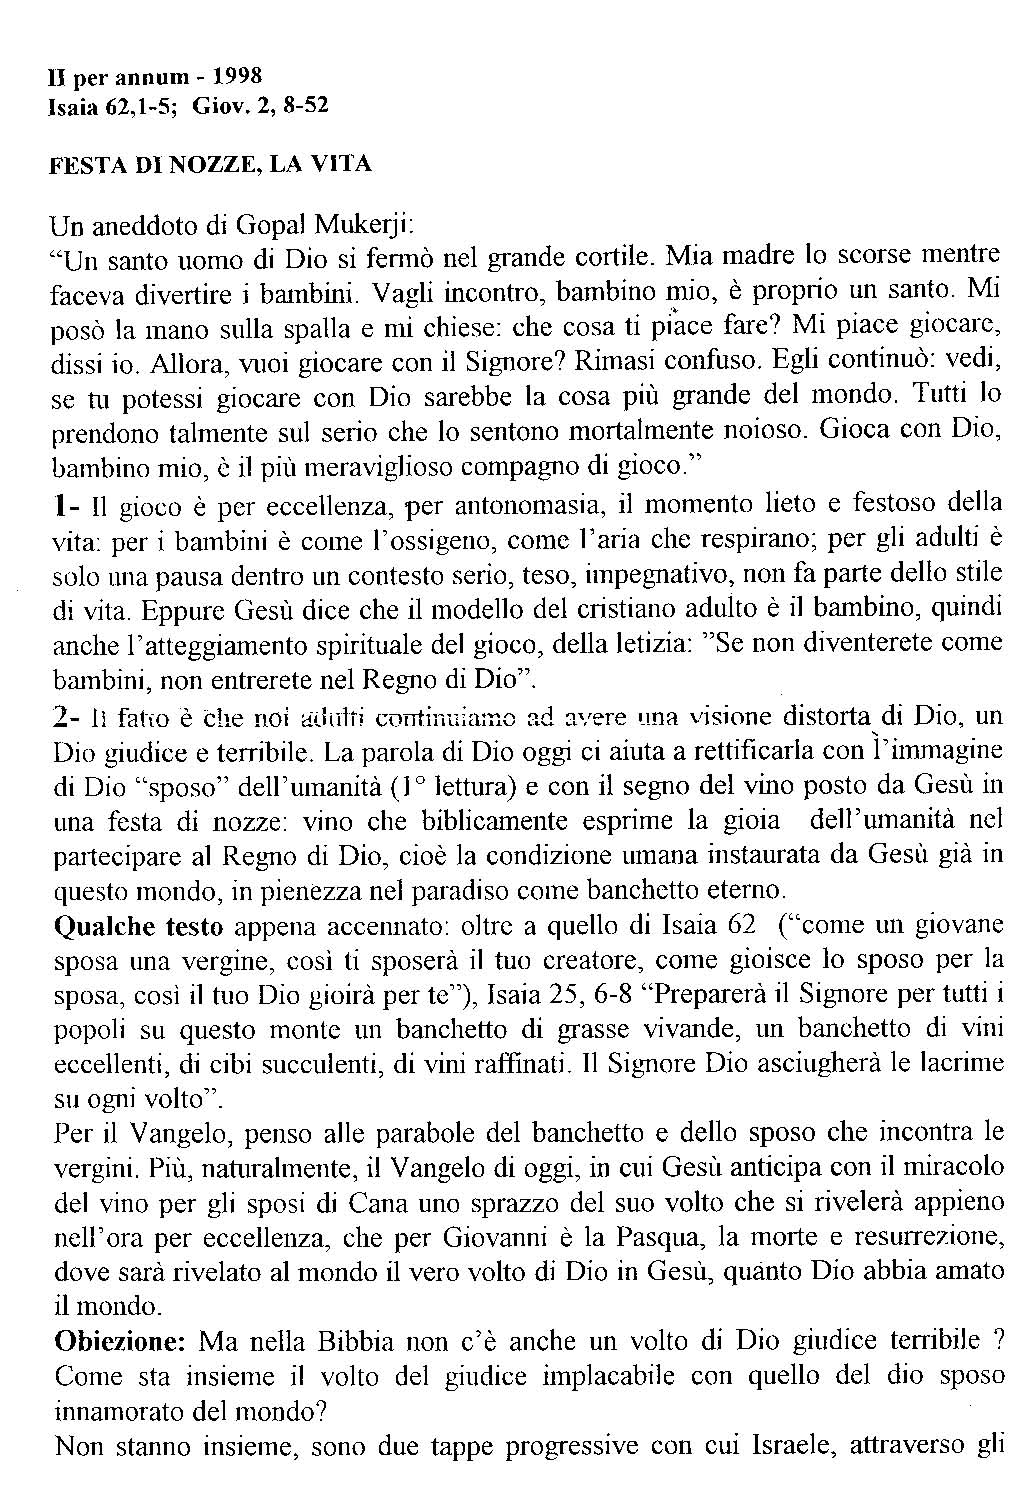 1998_Isaia_Festa_di_nozze.pdf